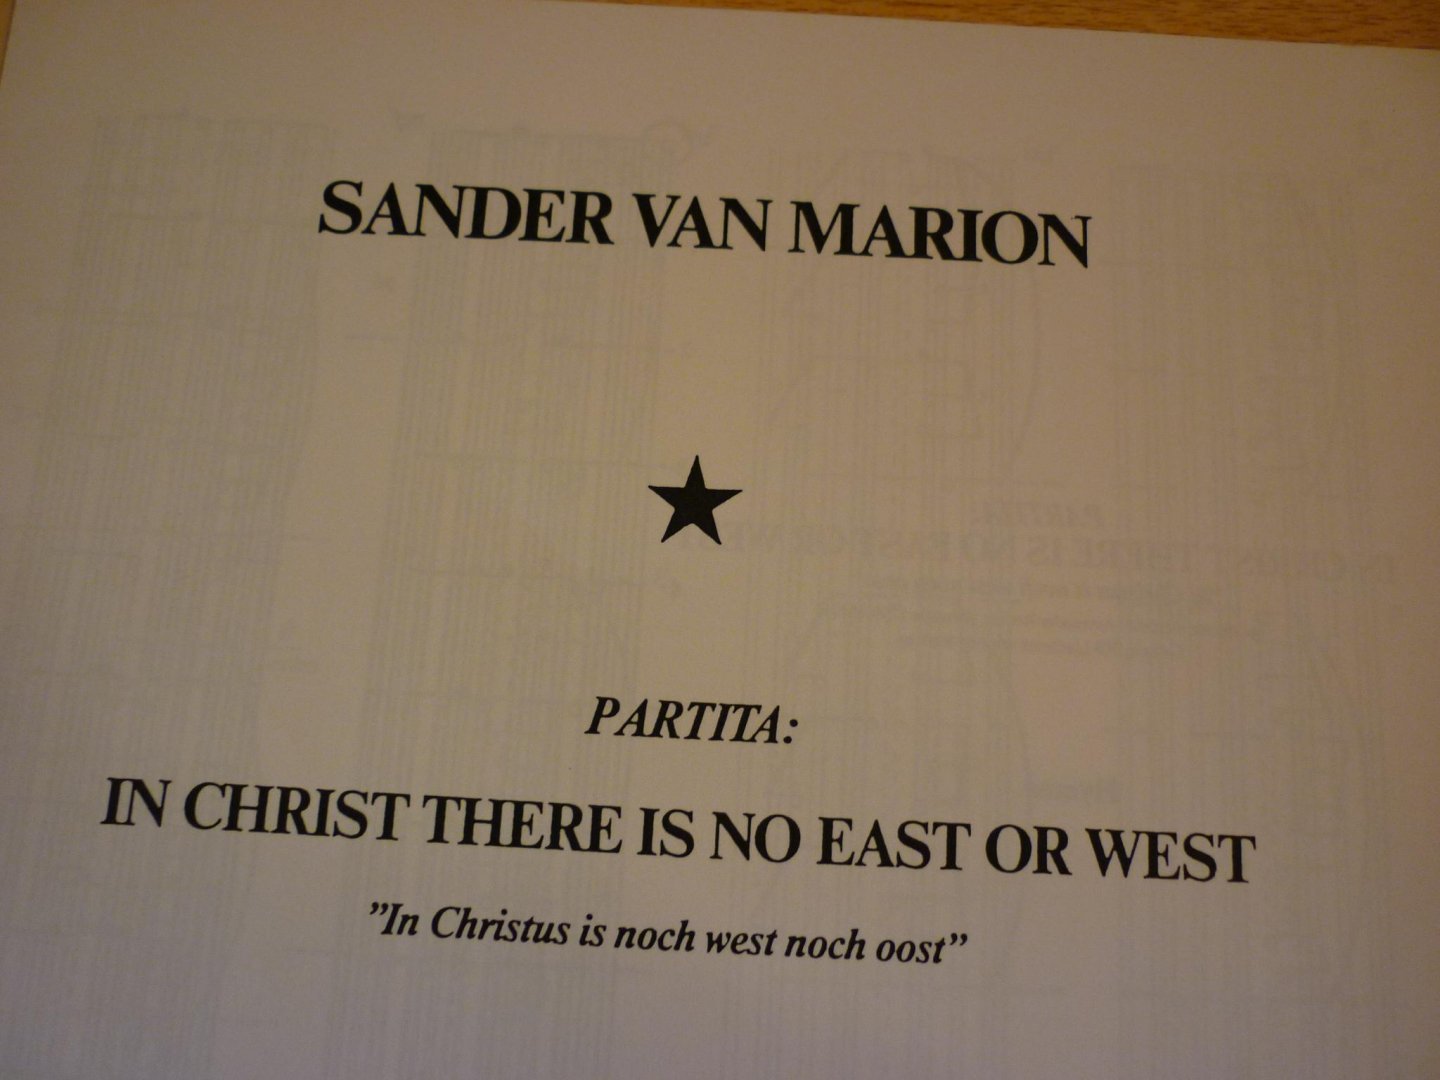 Marion; Sander van - Partita In Christ there is no east or west - In Christus is nog west nog oost - Klavarskribo